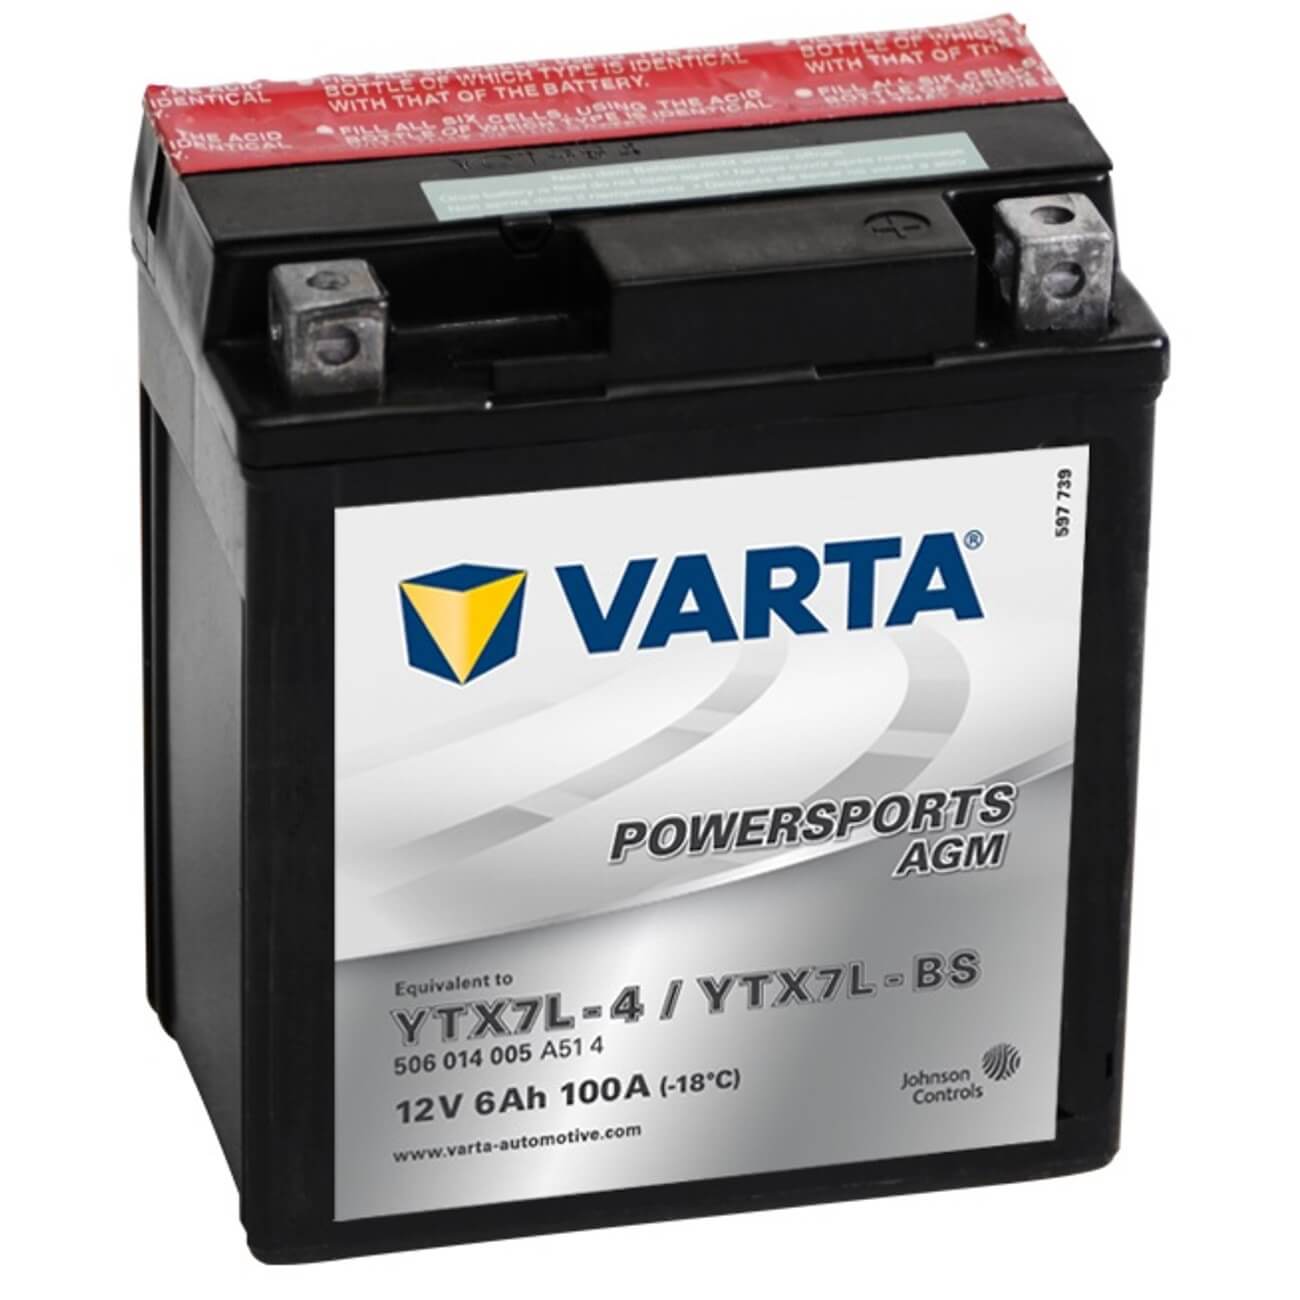 Varta Powersports 50614 AGM 12V 6Ah 100A